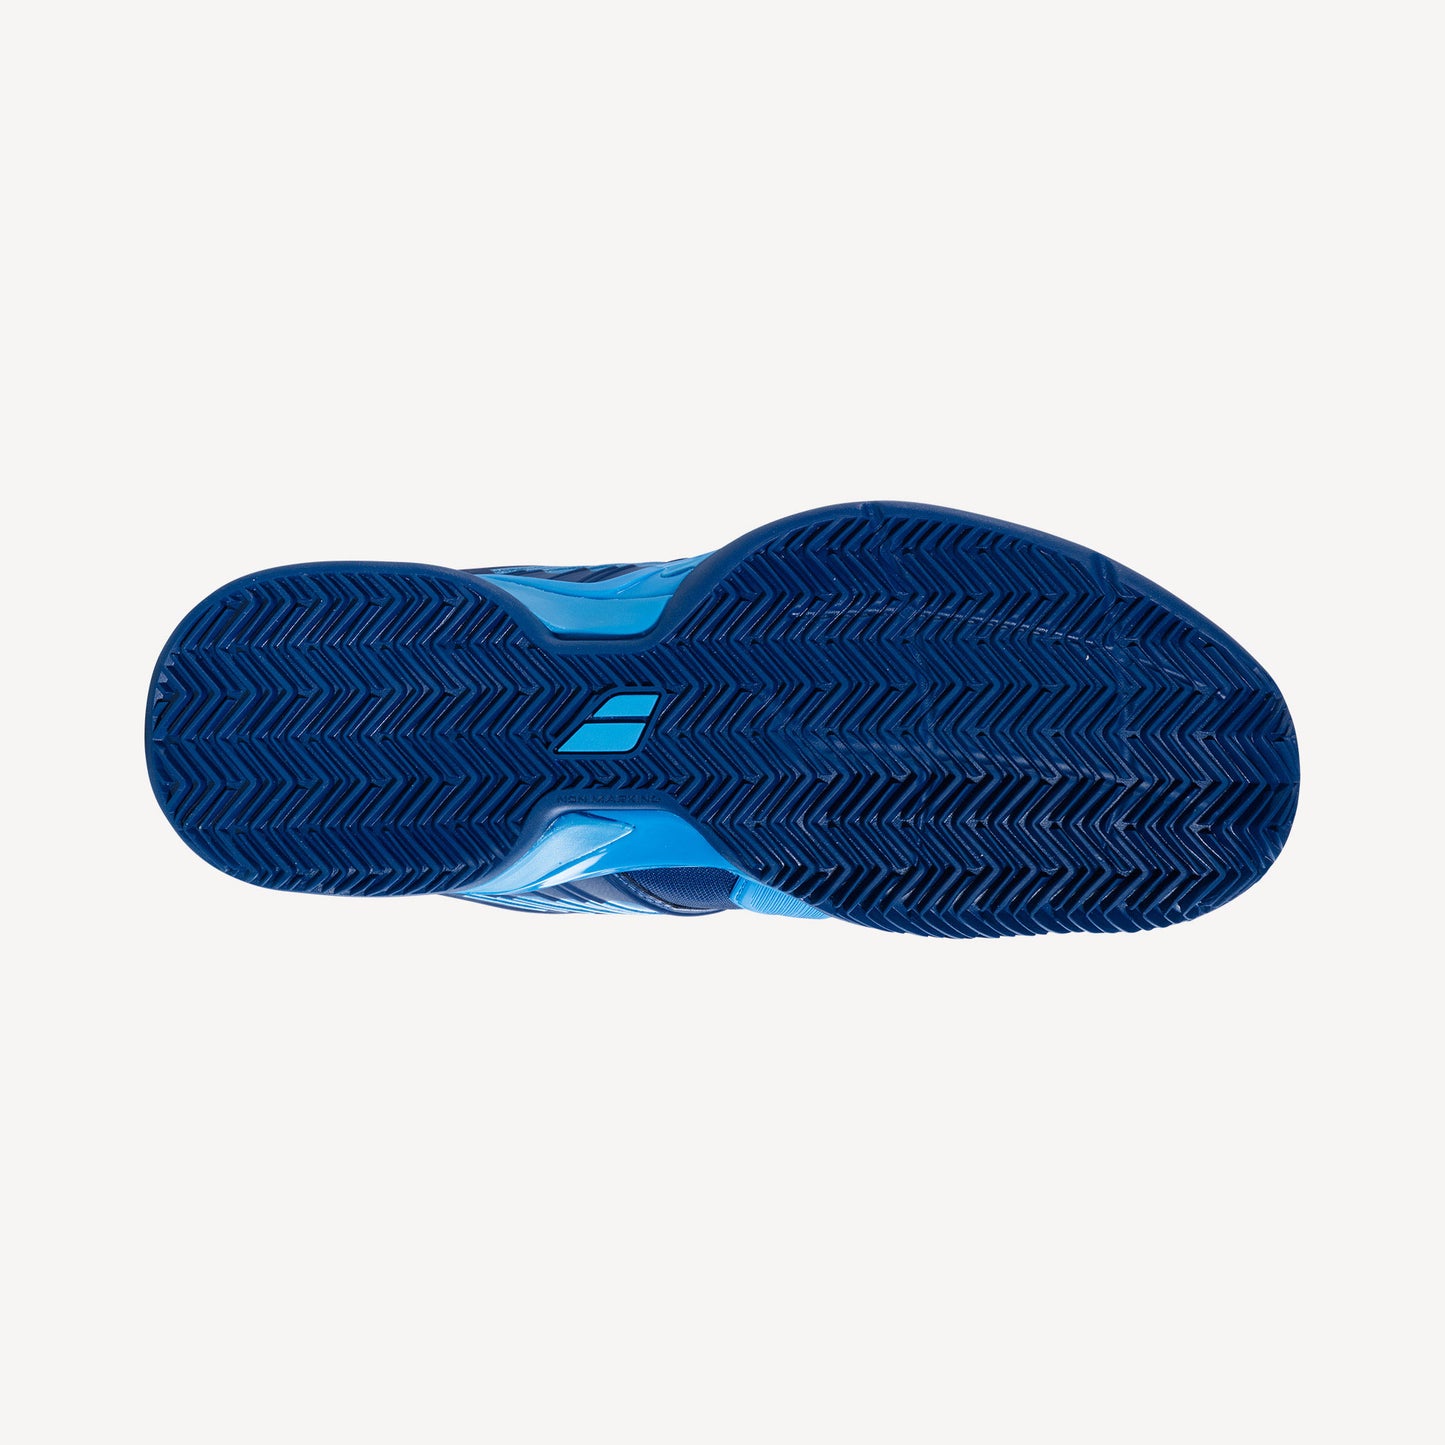 Babolat Propulse Fury Men's Clay Court Tennis Shoes Blue (2)